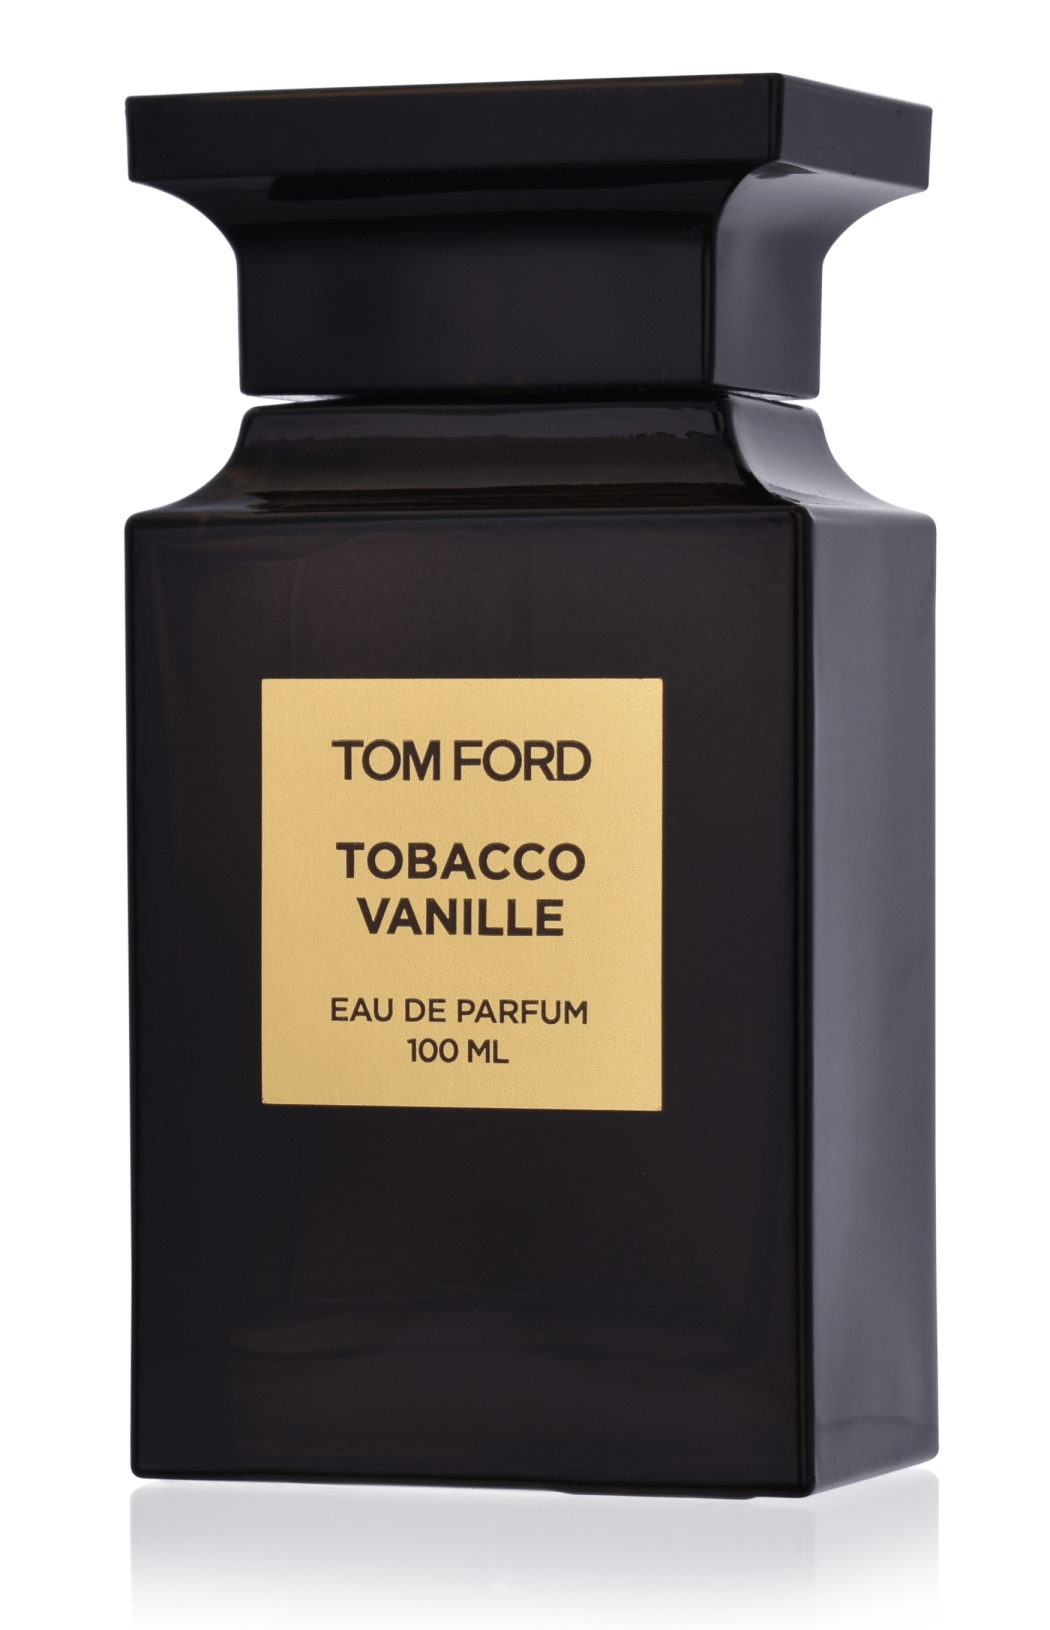 Tom Ford Tobacco Vanille 5 ml Eau de Parfum Abfüllung